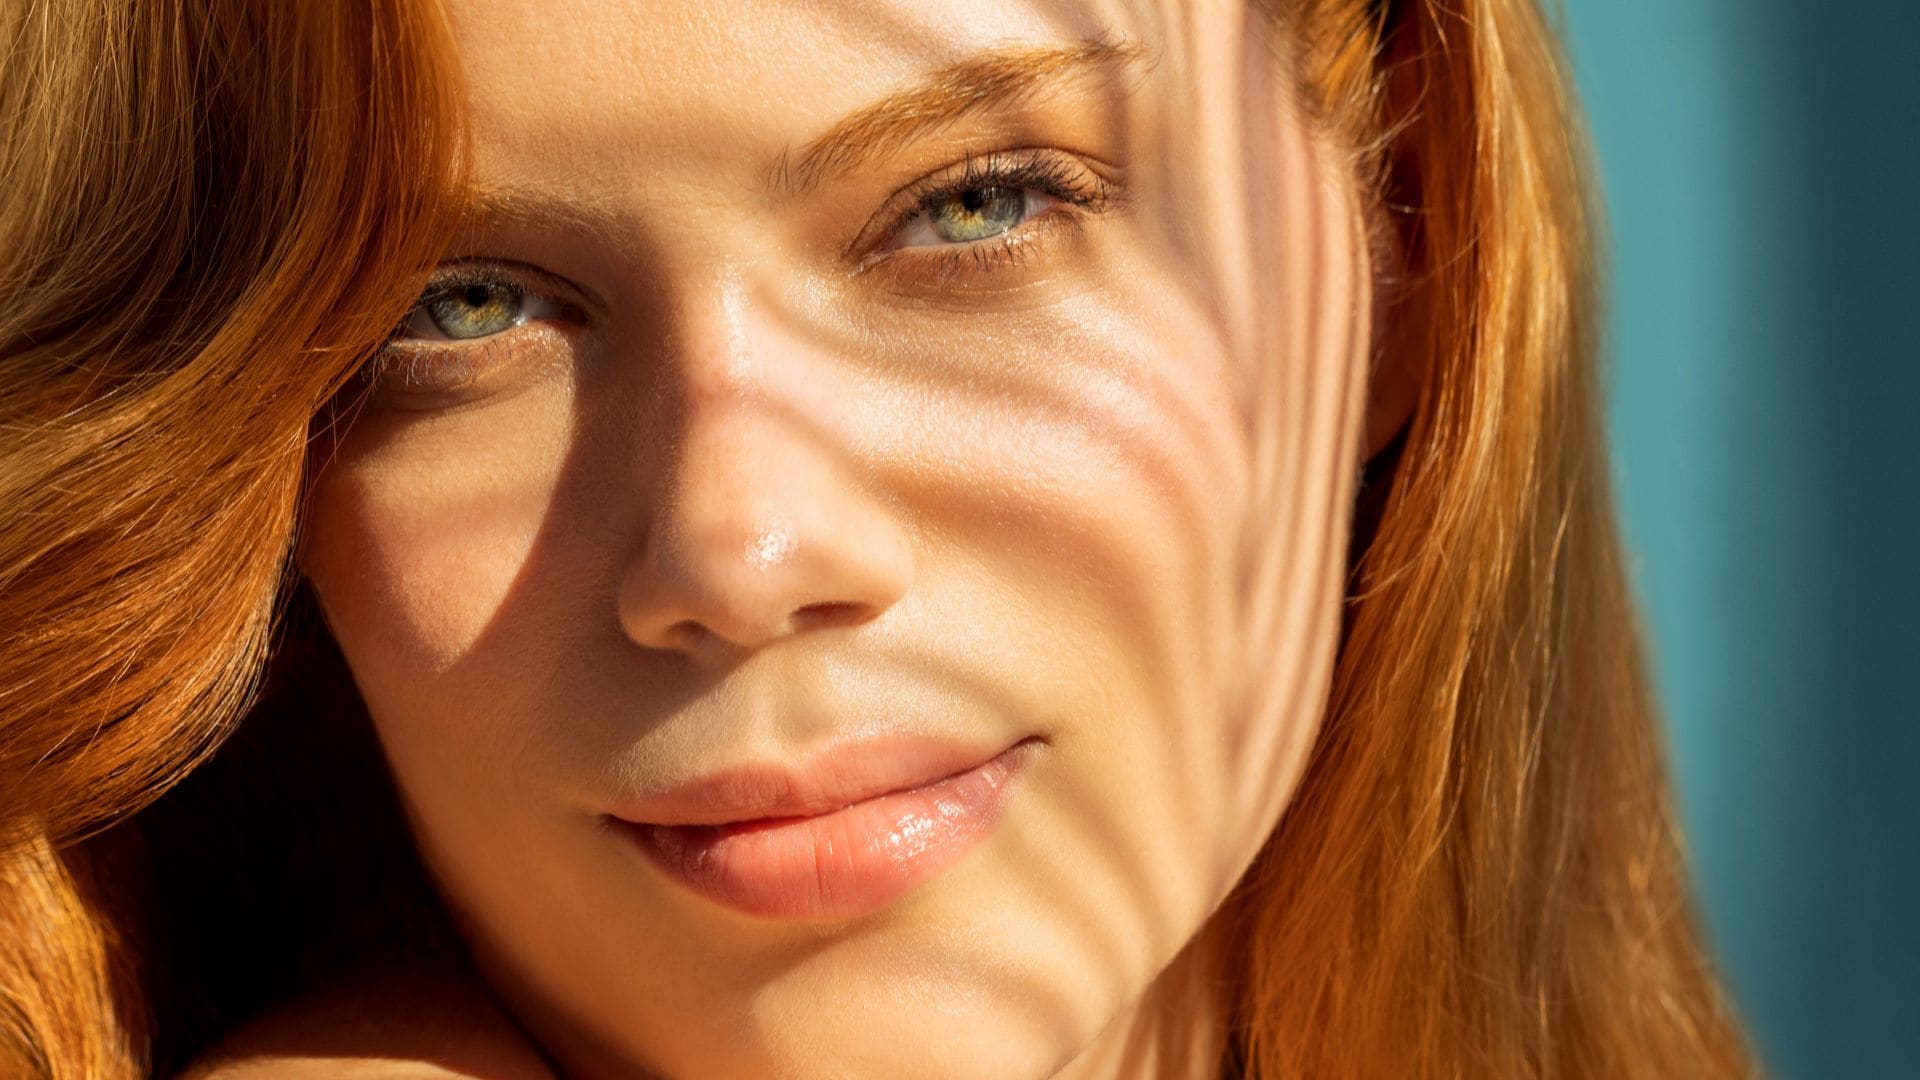 Limpieza facial en verano: cómo eliminar (bien) los restos de la protección solar para evitar acné y otros problemas